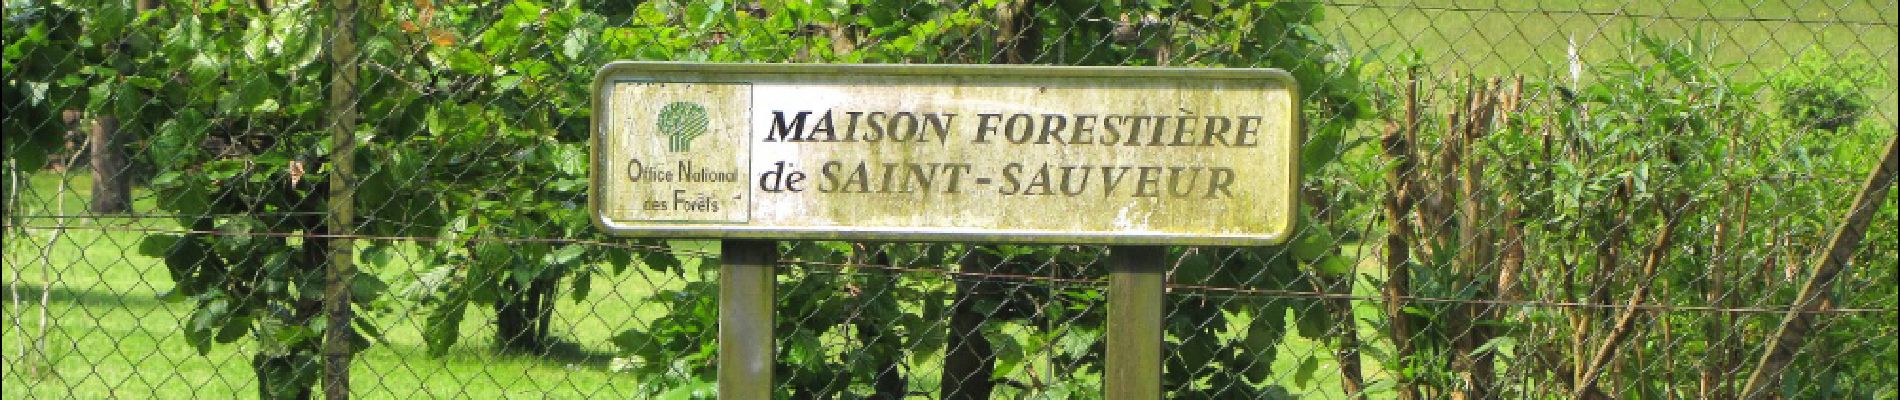 Point of interest Saint-Sauveur - Point 22 - Photo